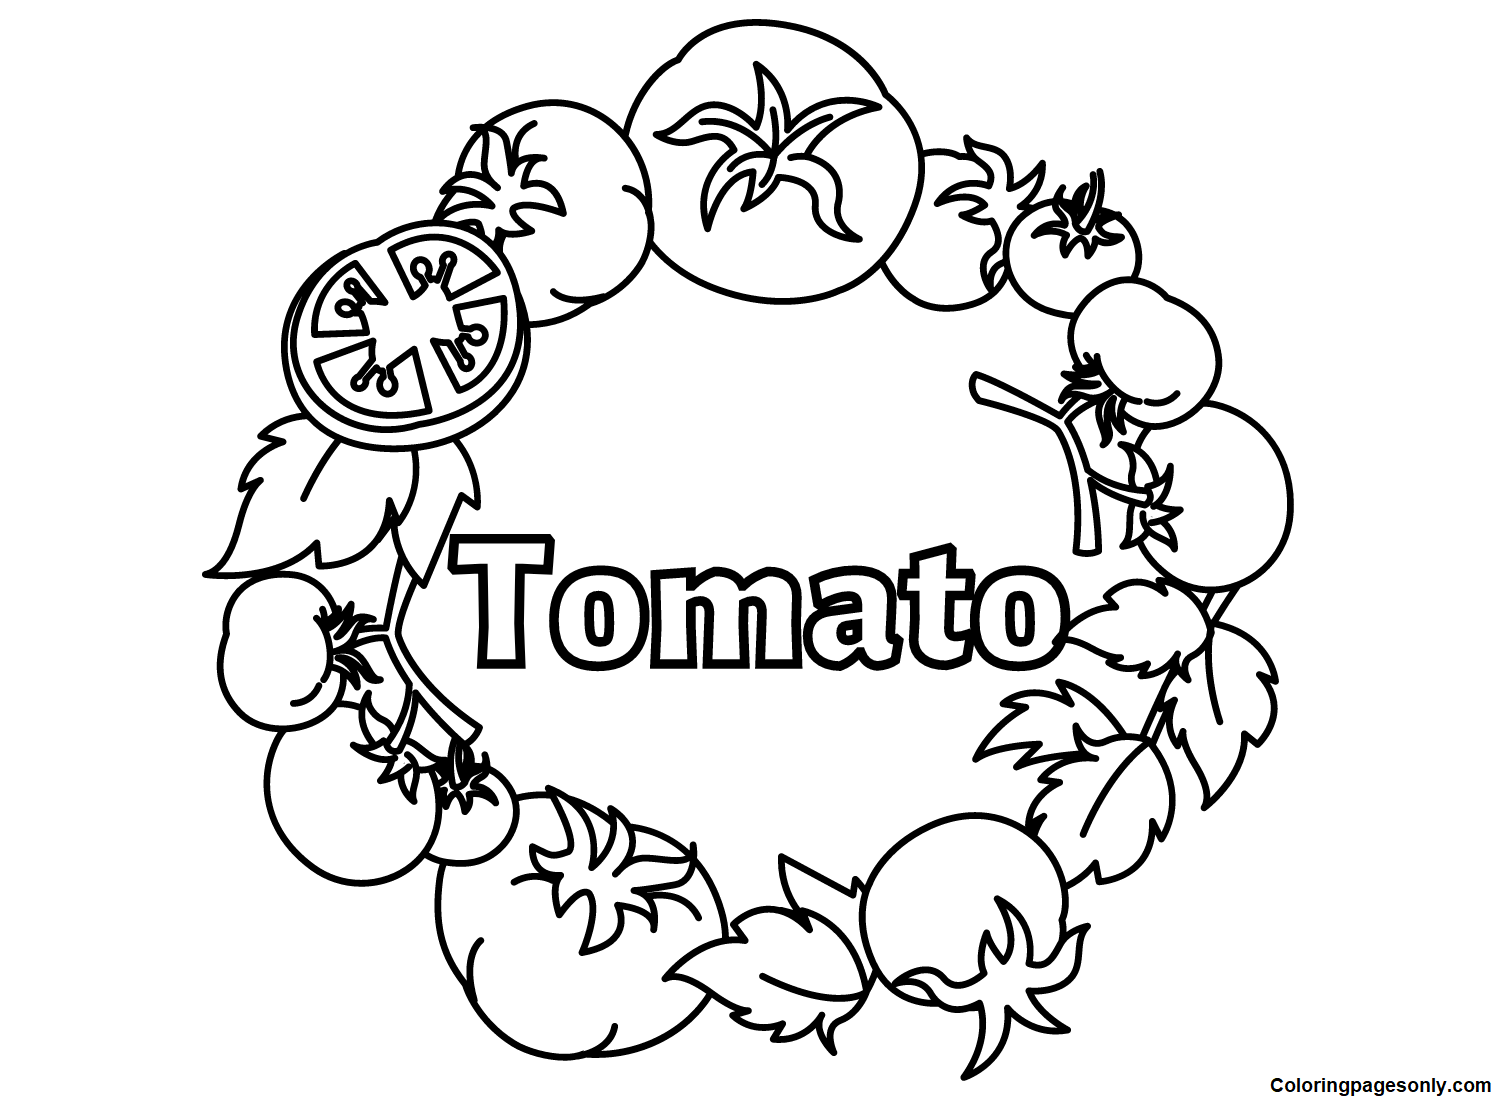 Imagens de tomate do tomate